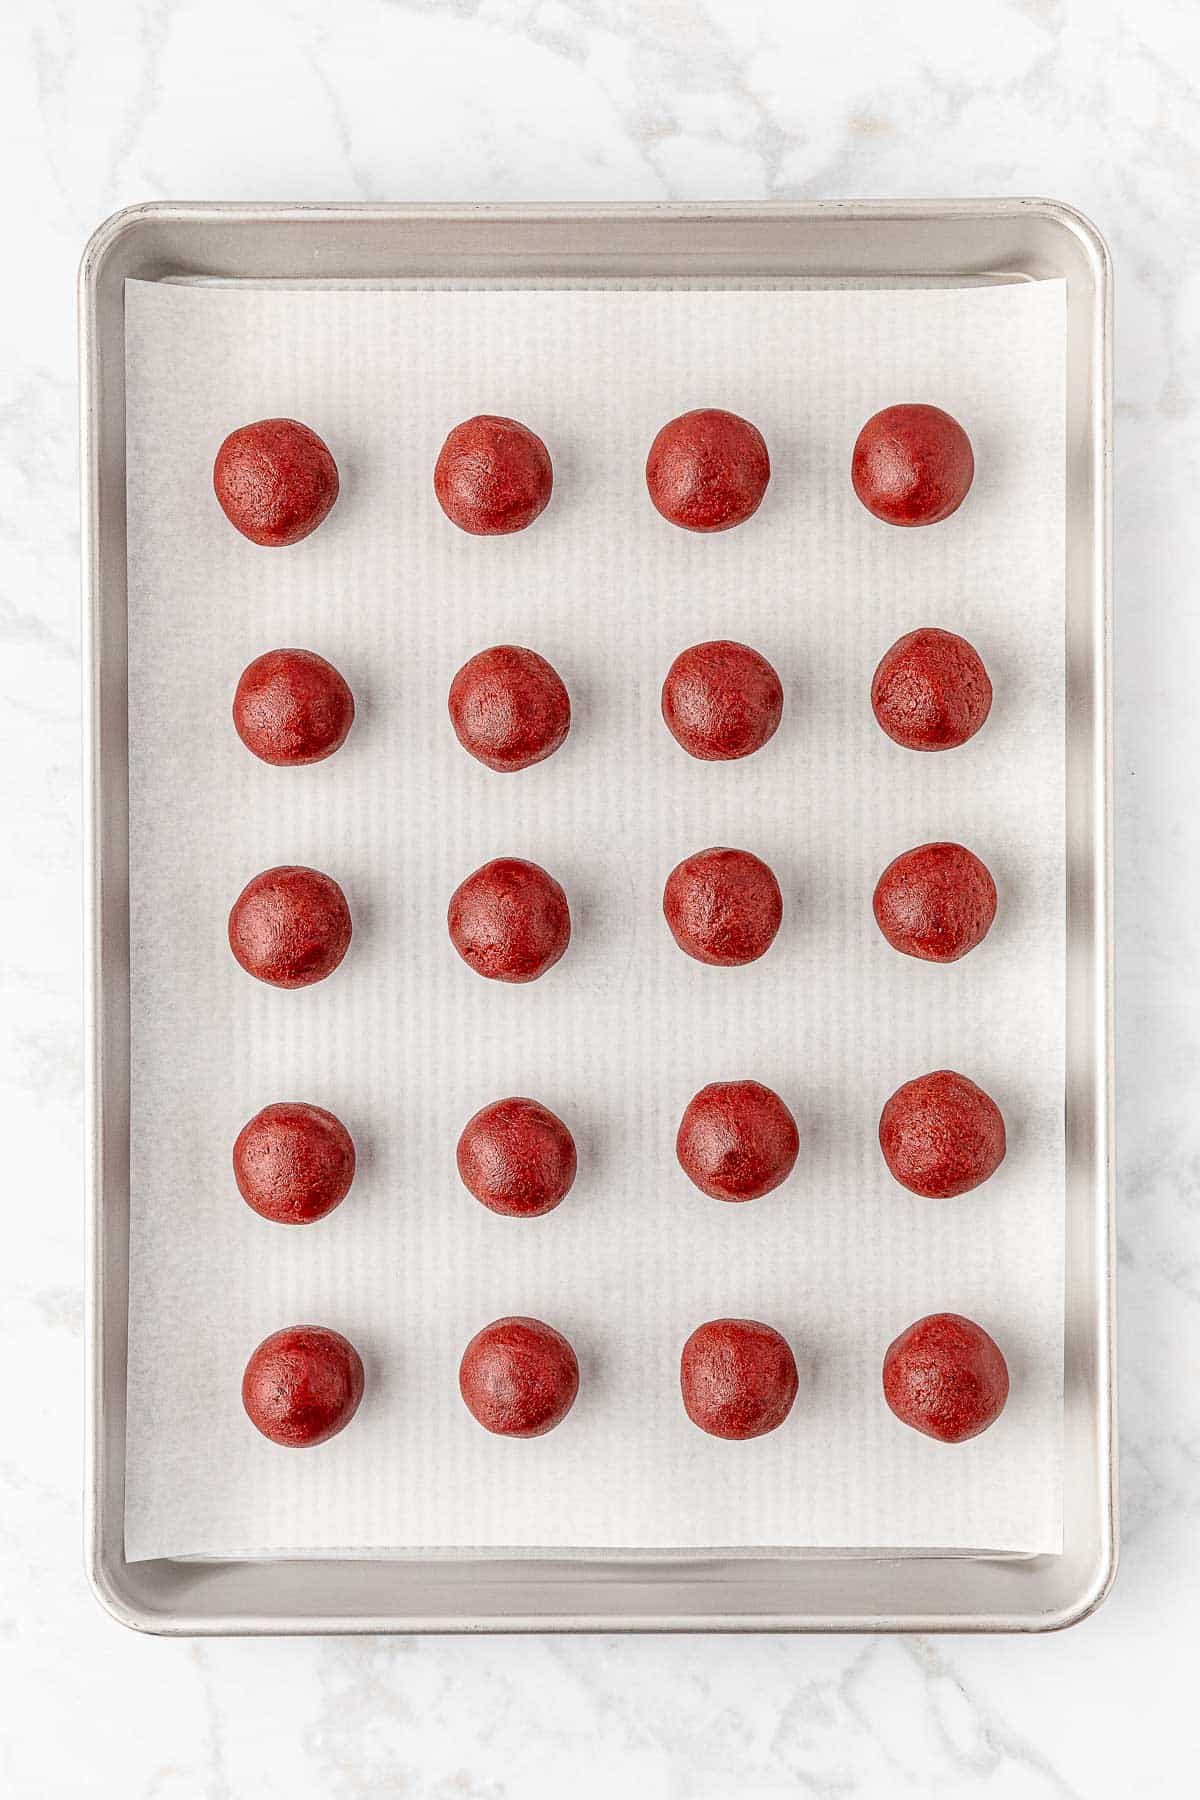 24 red velvet oreo balls on a baking sheet.